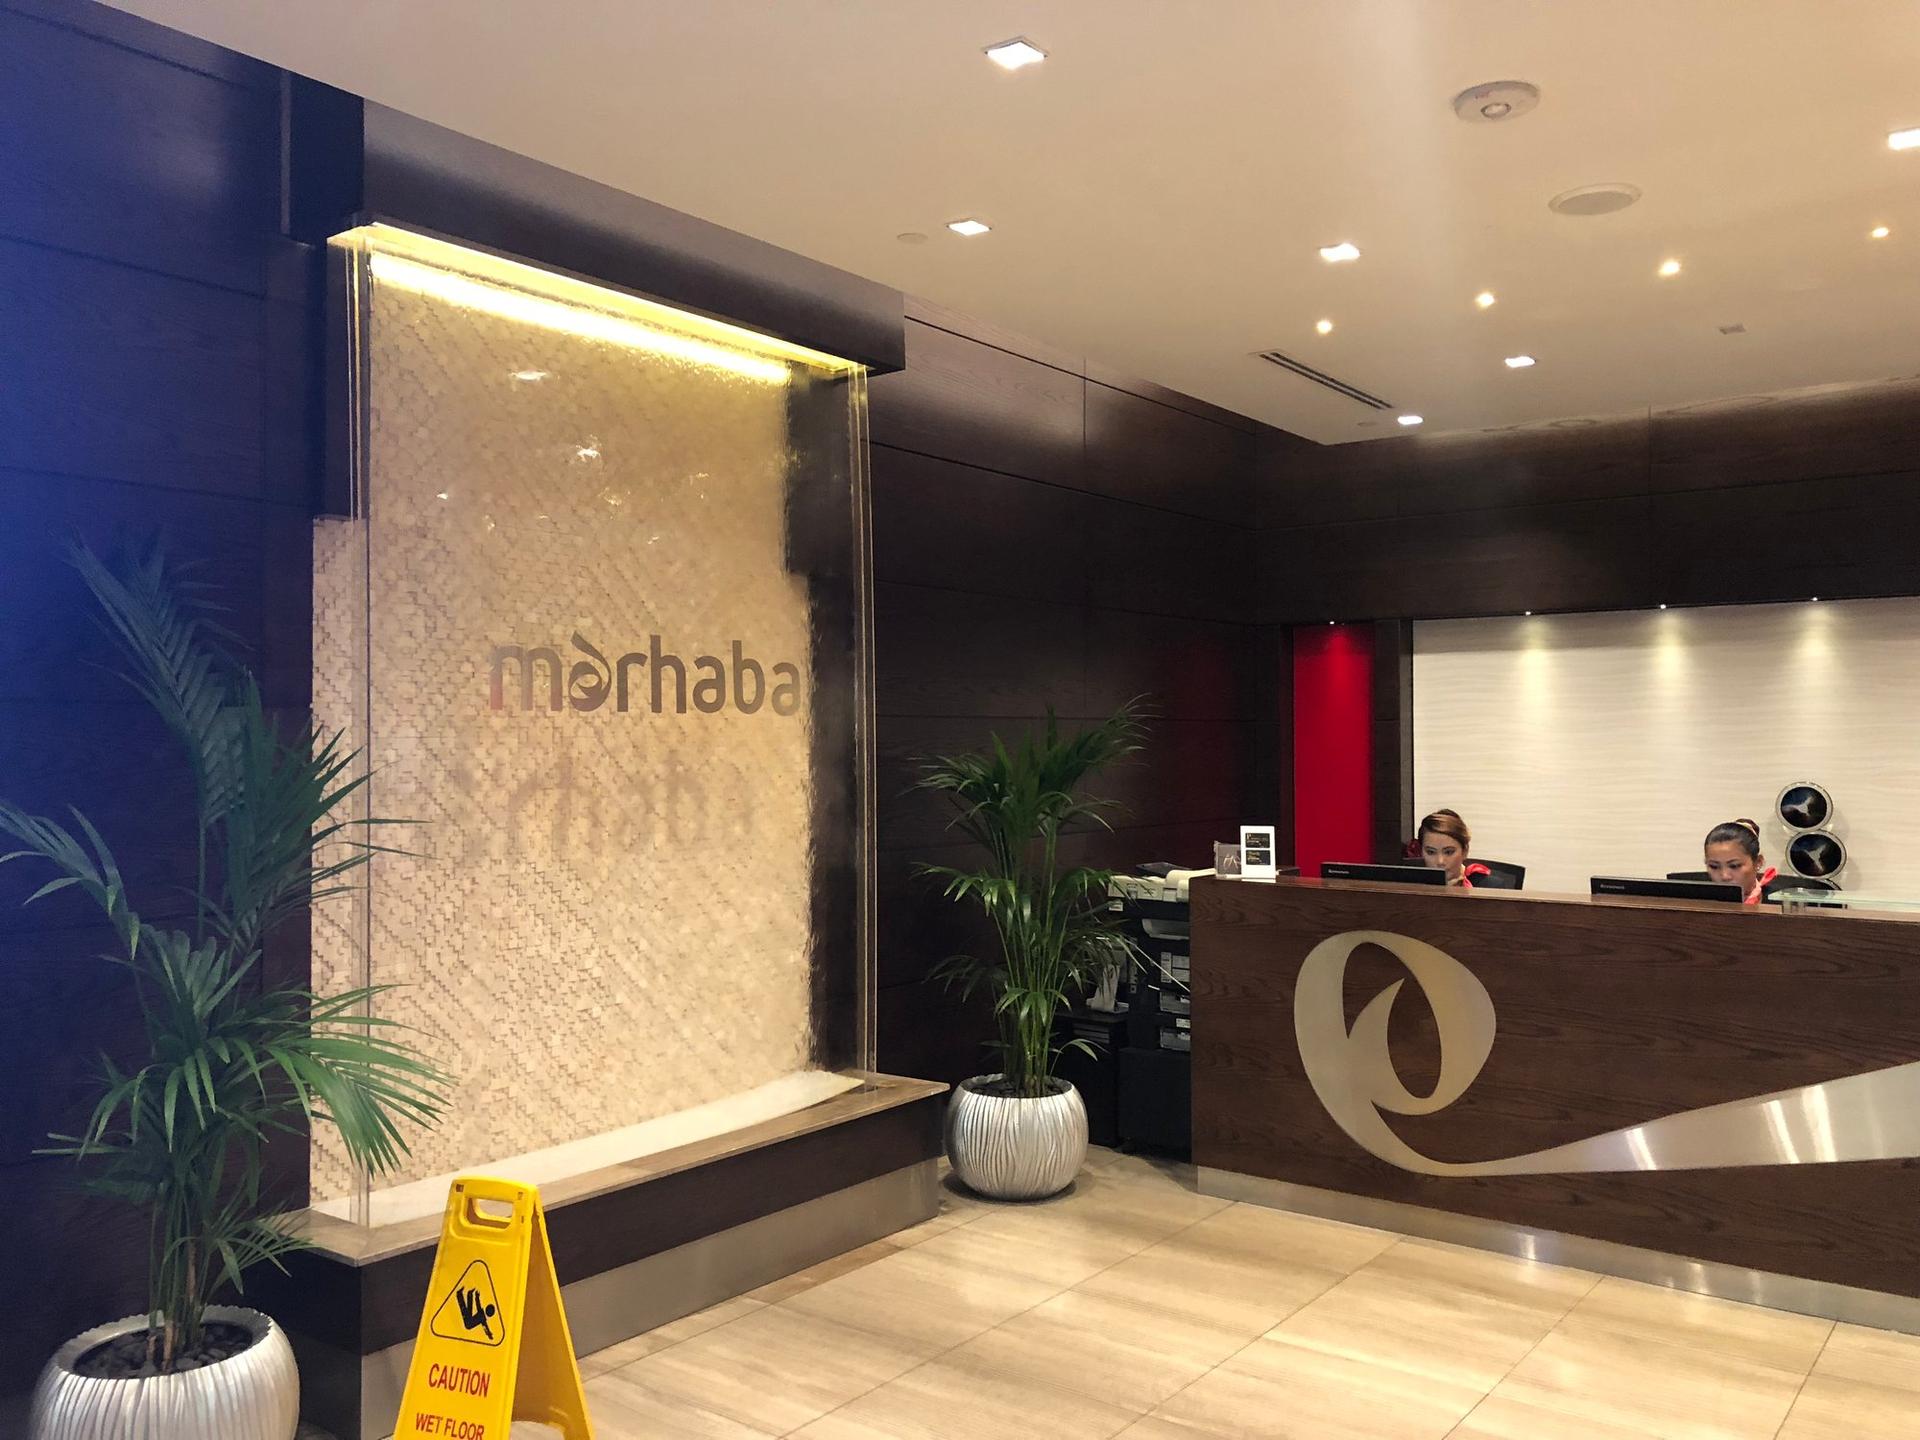 Marhaba Lounge image 34 of 57